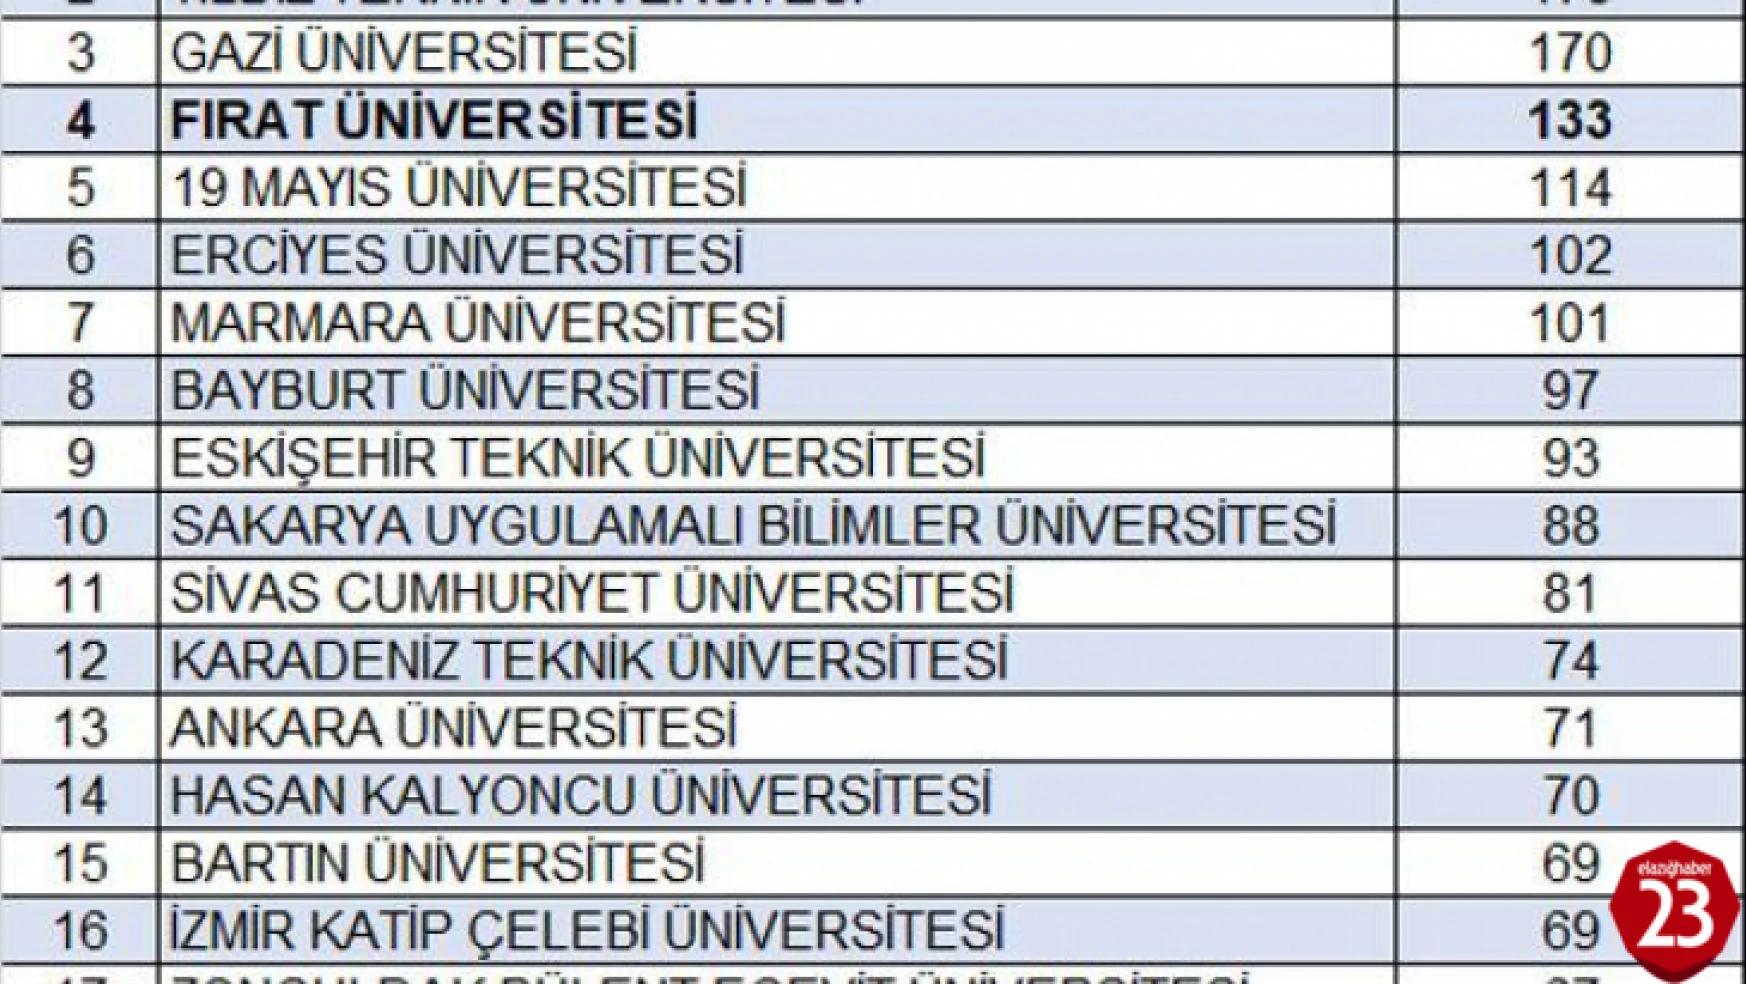 Fırat Üniversitesi 133 Projesi İle Türkiye'de 4. Oldu